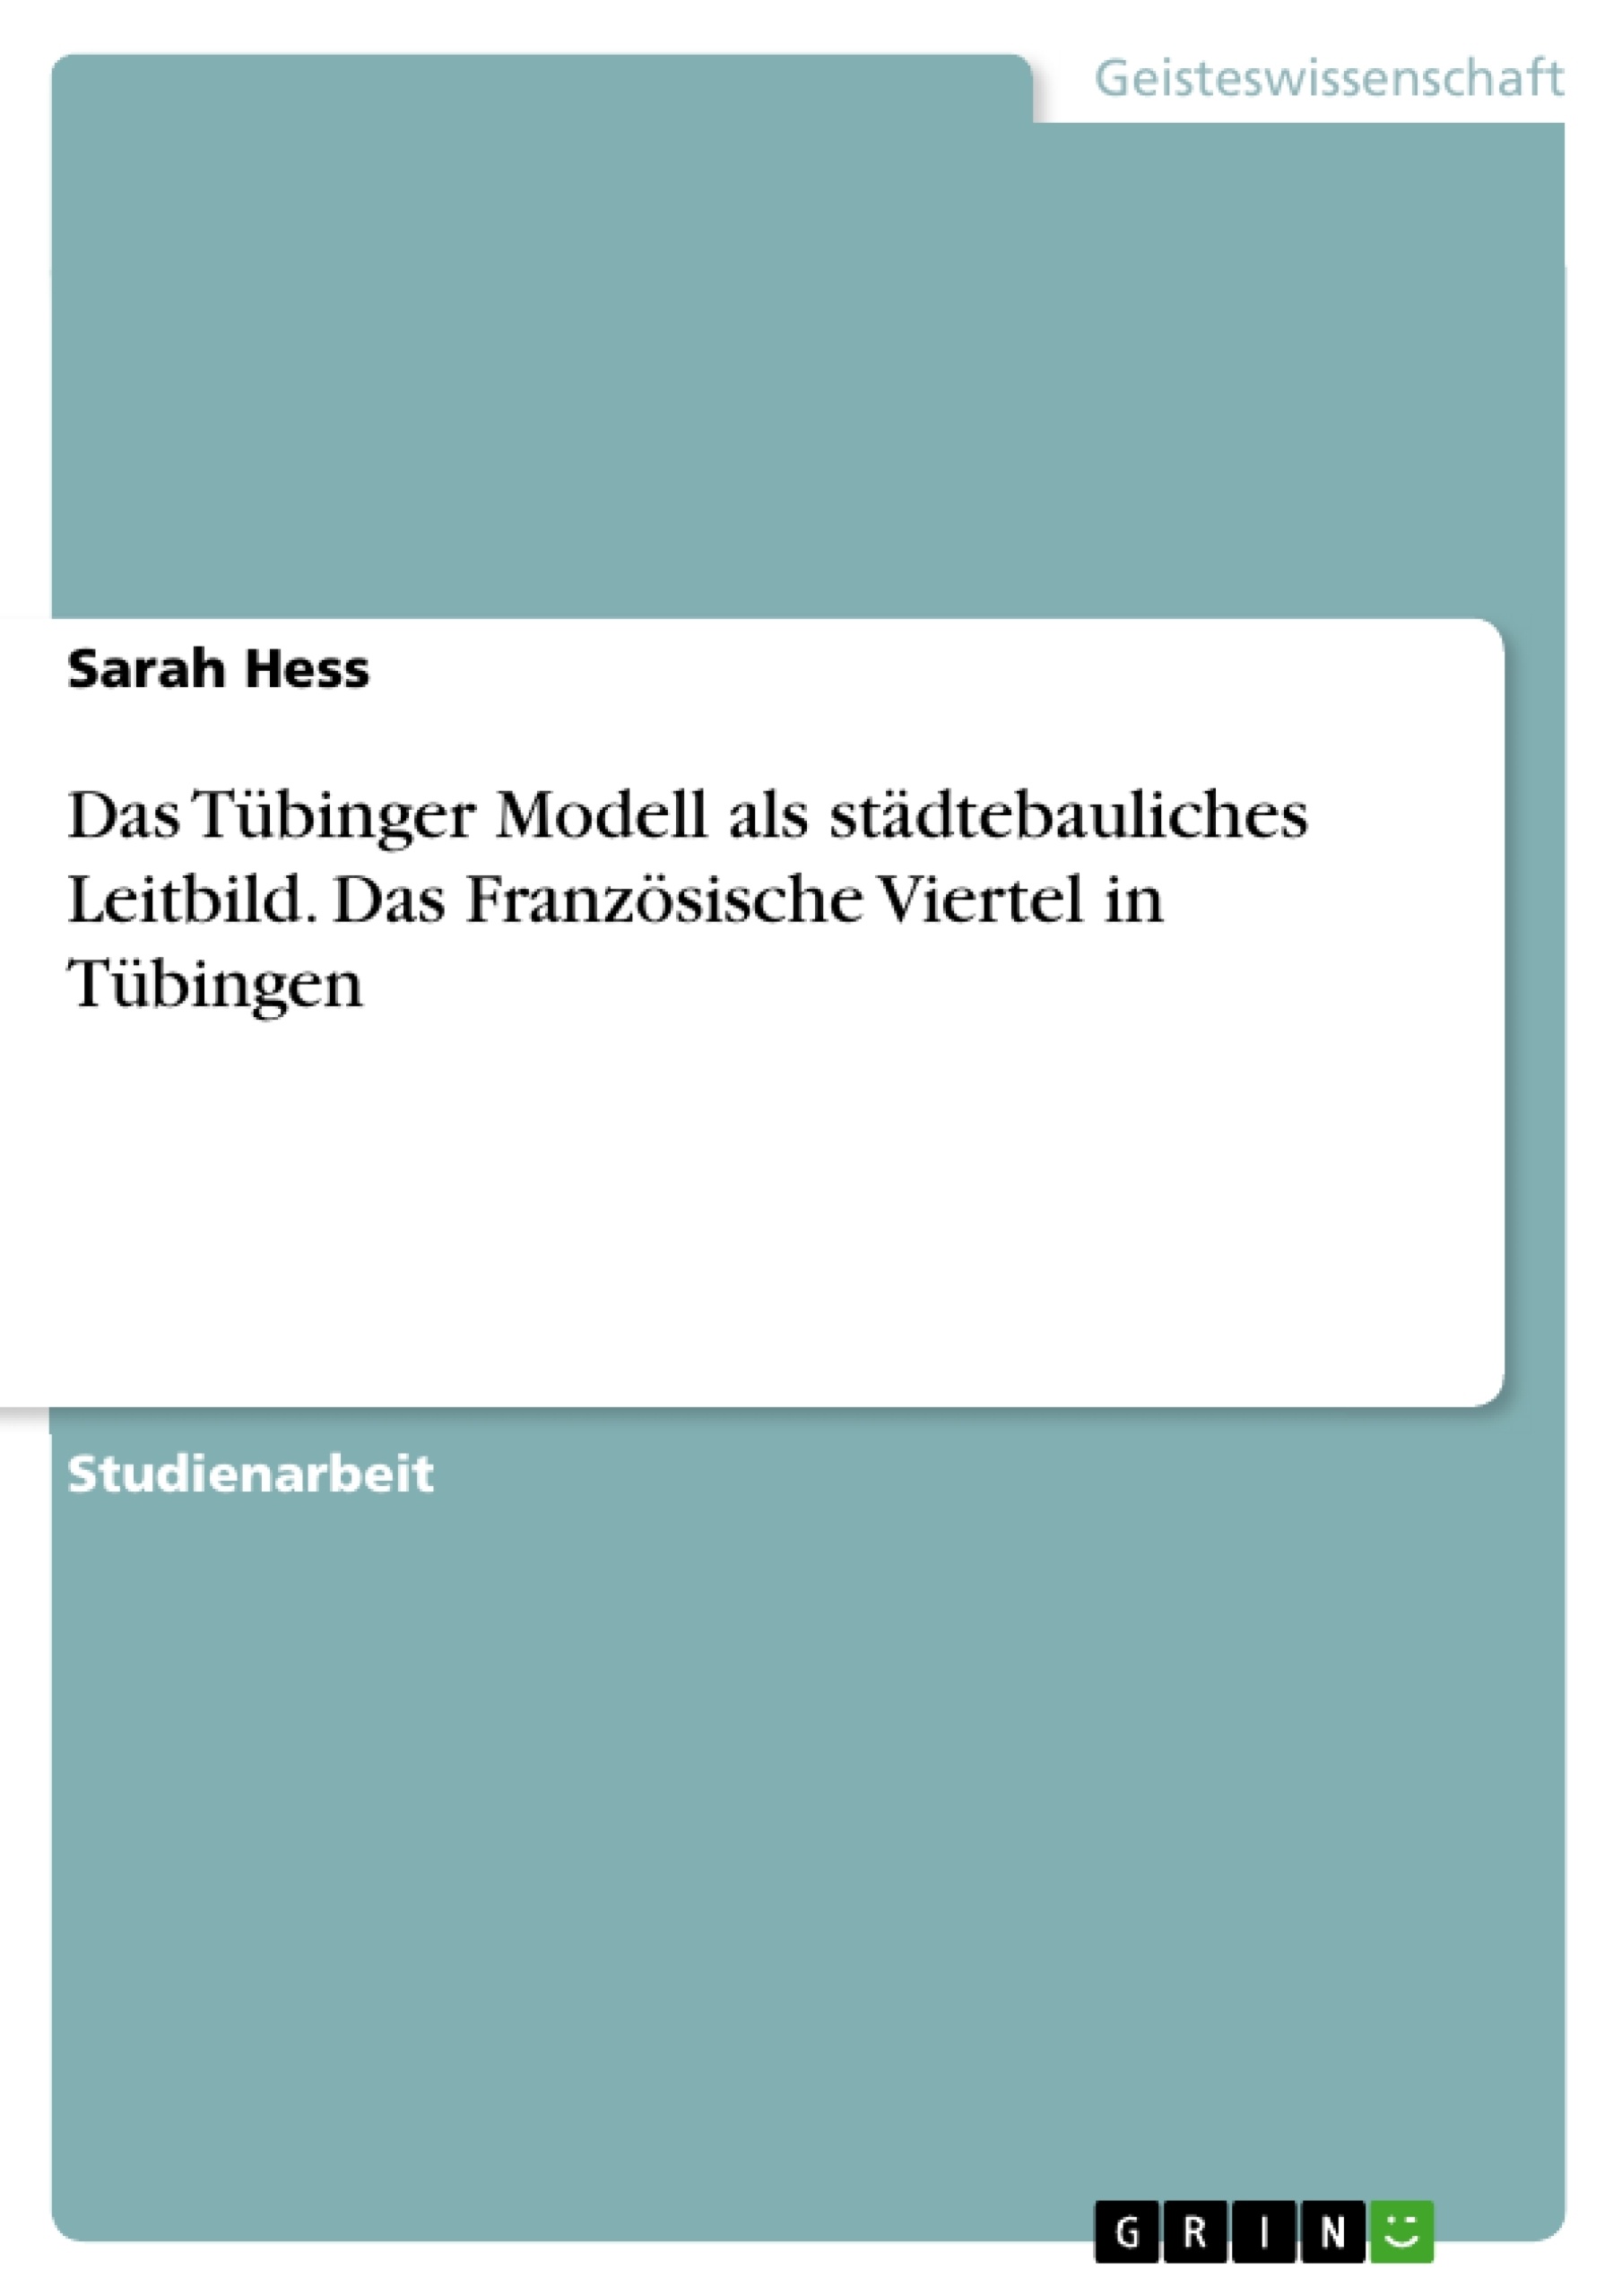 Titre: Das Tübinger Modell als städtebauliches Leitbild. Das Französische Viertel in Tübingen